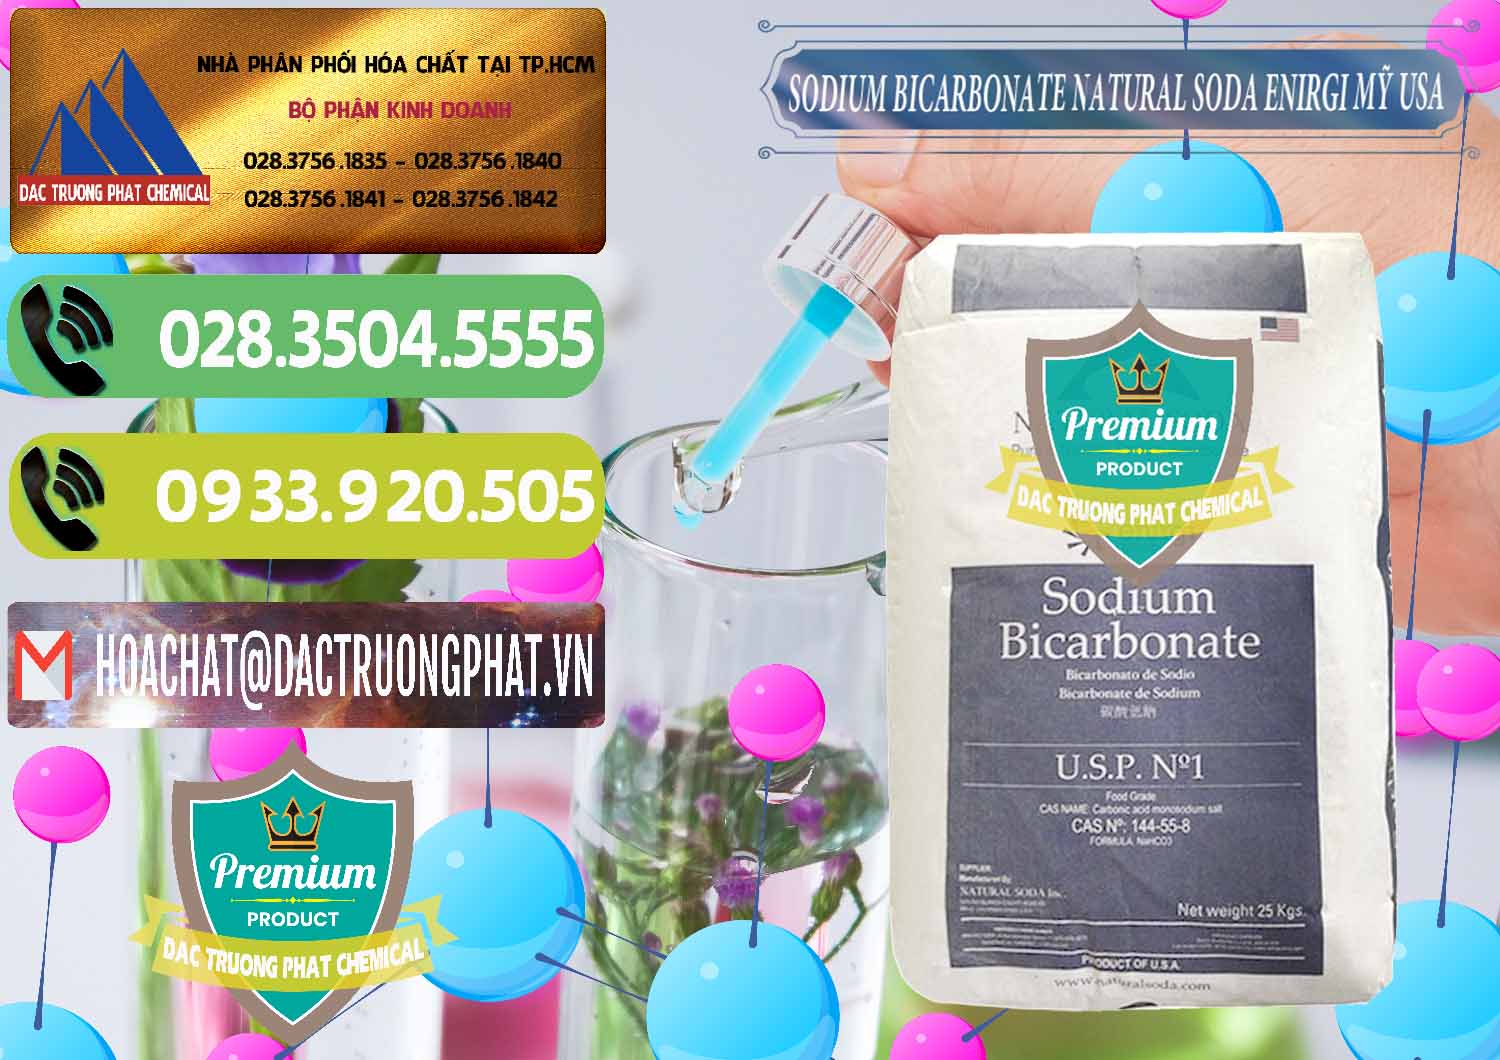 Công ty cung cấp & bán Sodium Bicarbonate – Bicar NaHCO3 Food Grade Natural Soda Enirgi Mỹ USA - 0257 - Nhà cung cấp & kinh doanh hóa chất tại TP.HCM - hoachatmientay.vn